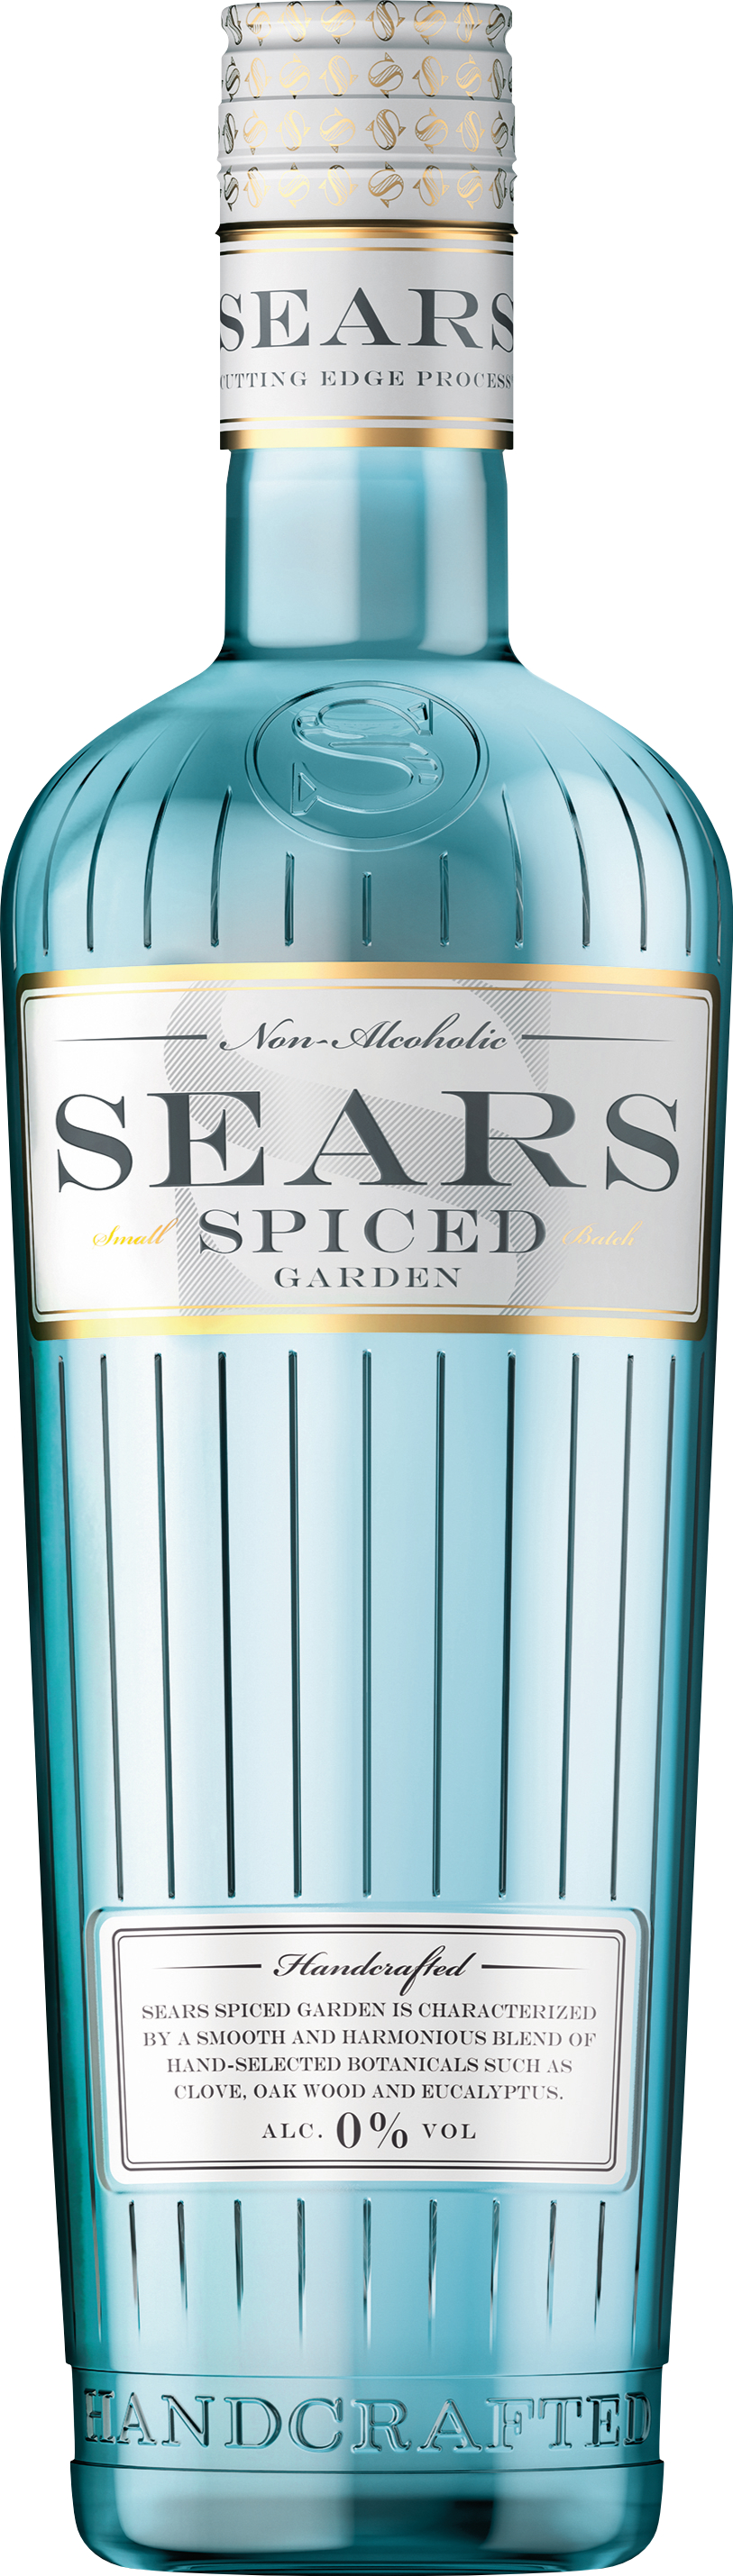 SEARS Spiced Garden alkoholfrei 0,7l